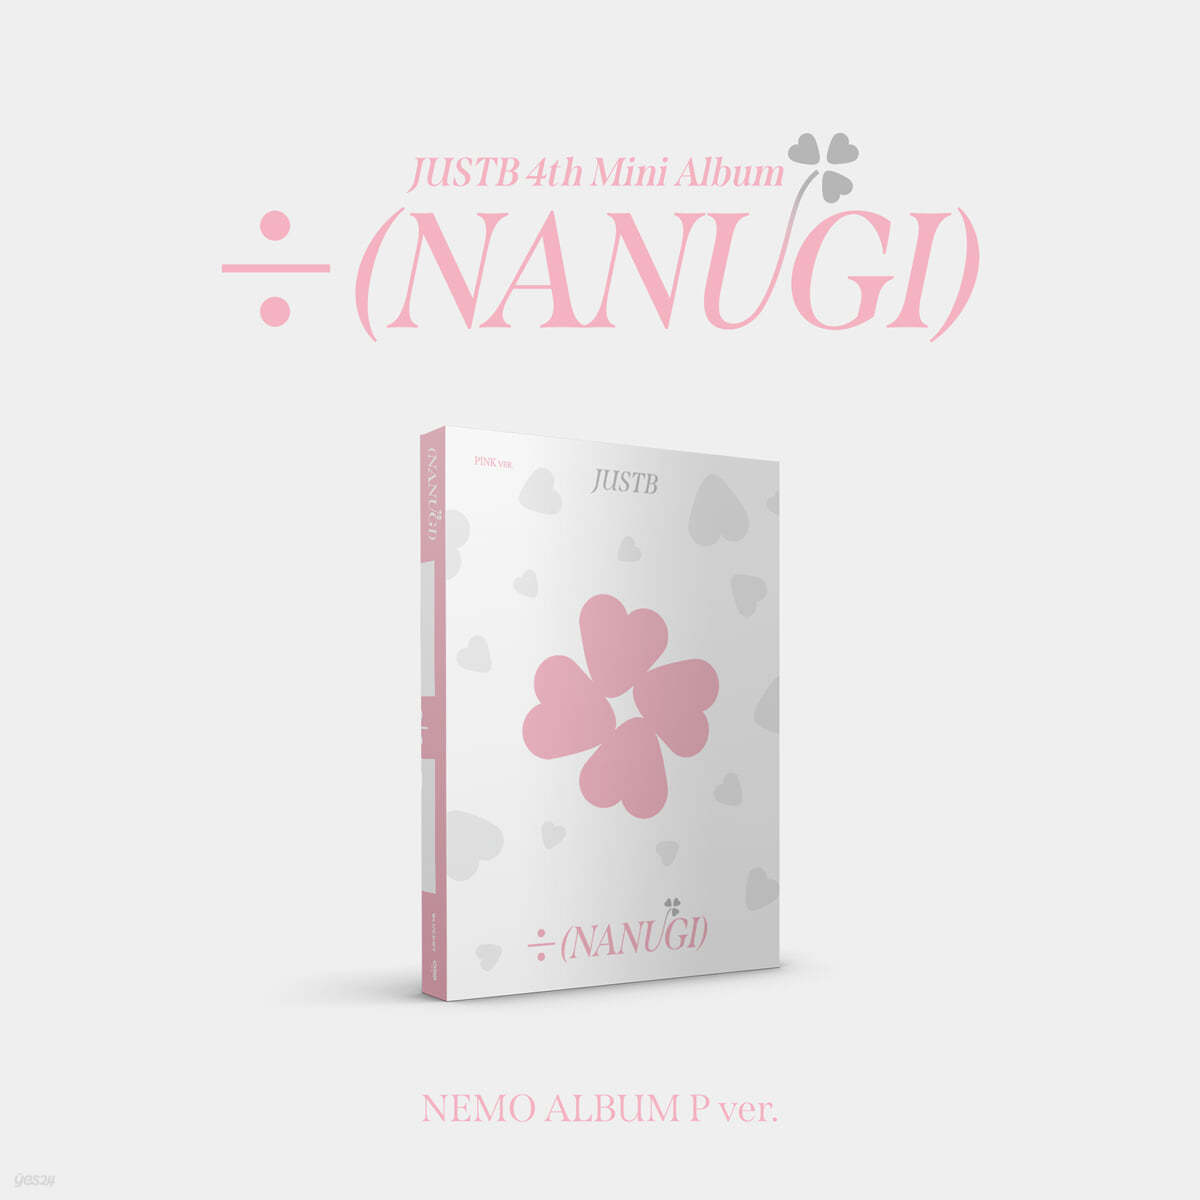 저스트비 (JUST B) - 미니앨범 4집 : &#247; (NANUGI) [Nemo Album] [Pink ver.]